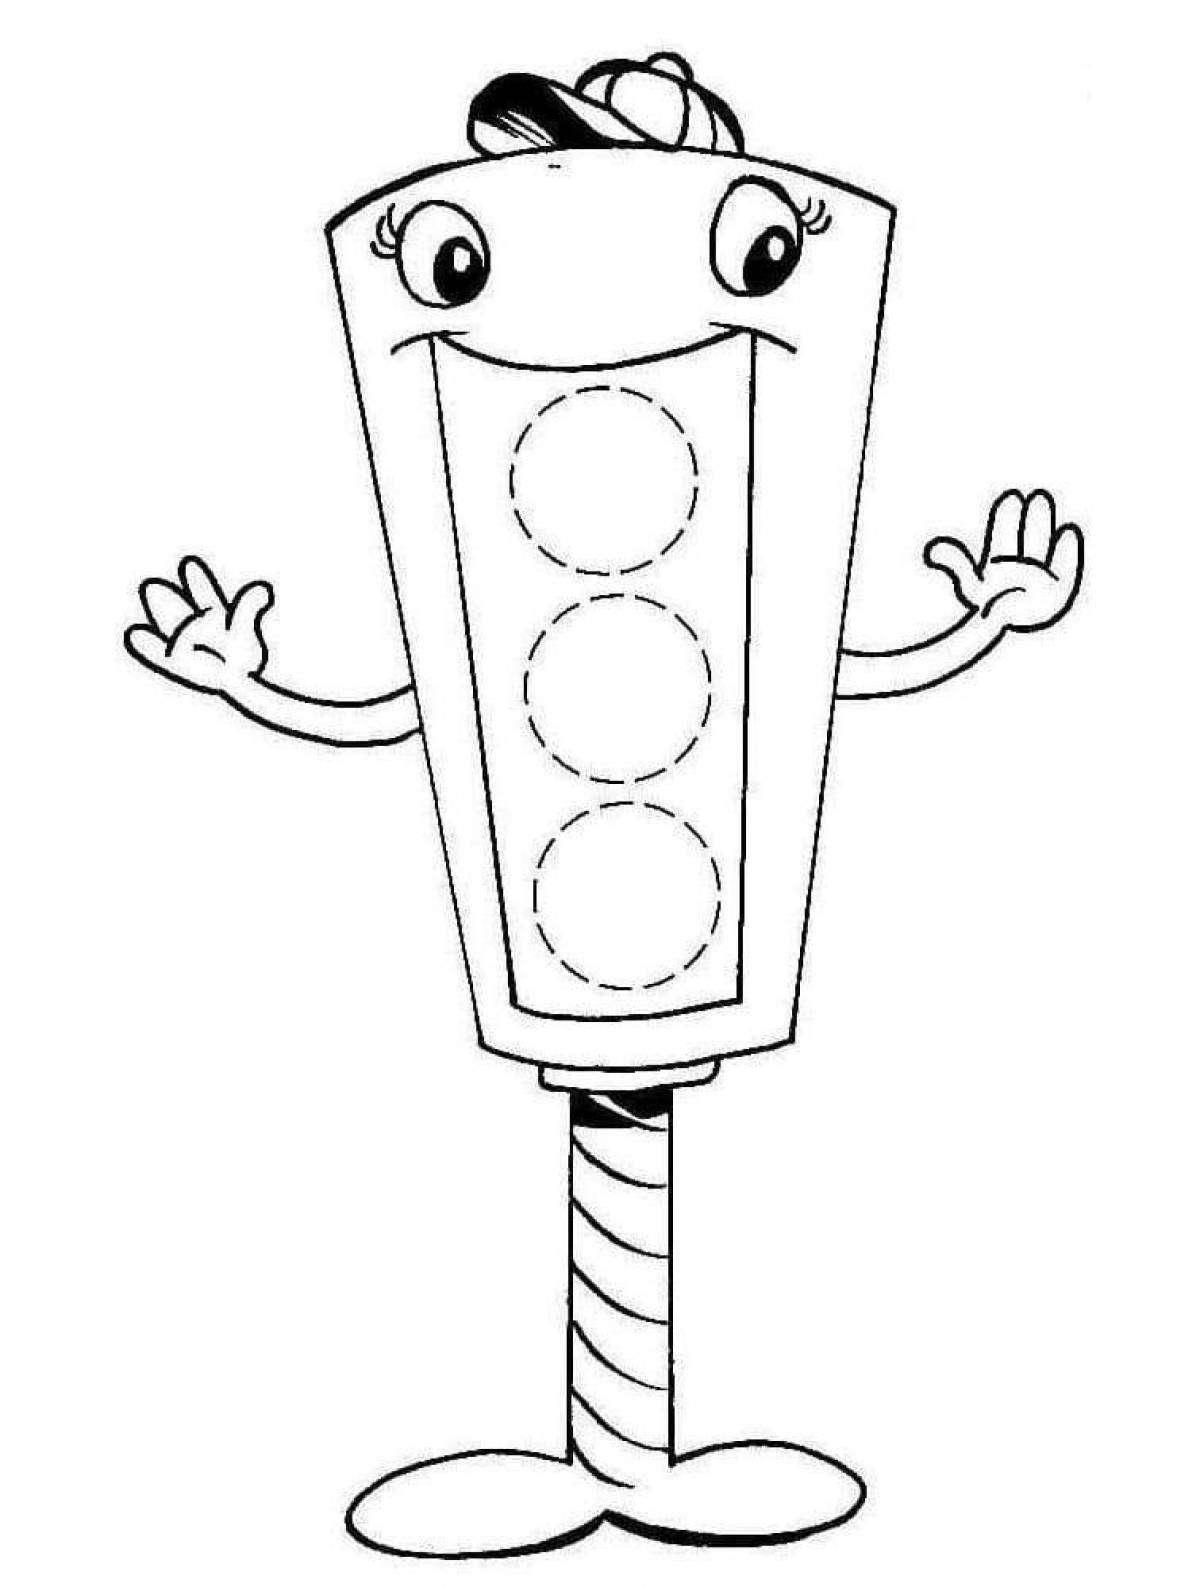 Привлекательная раскраска «светофор» для дошкольников 2-3 лет